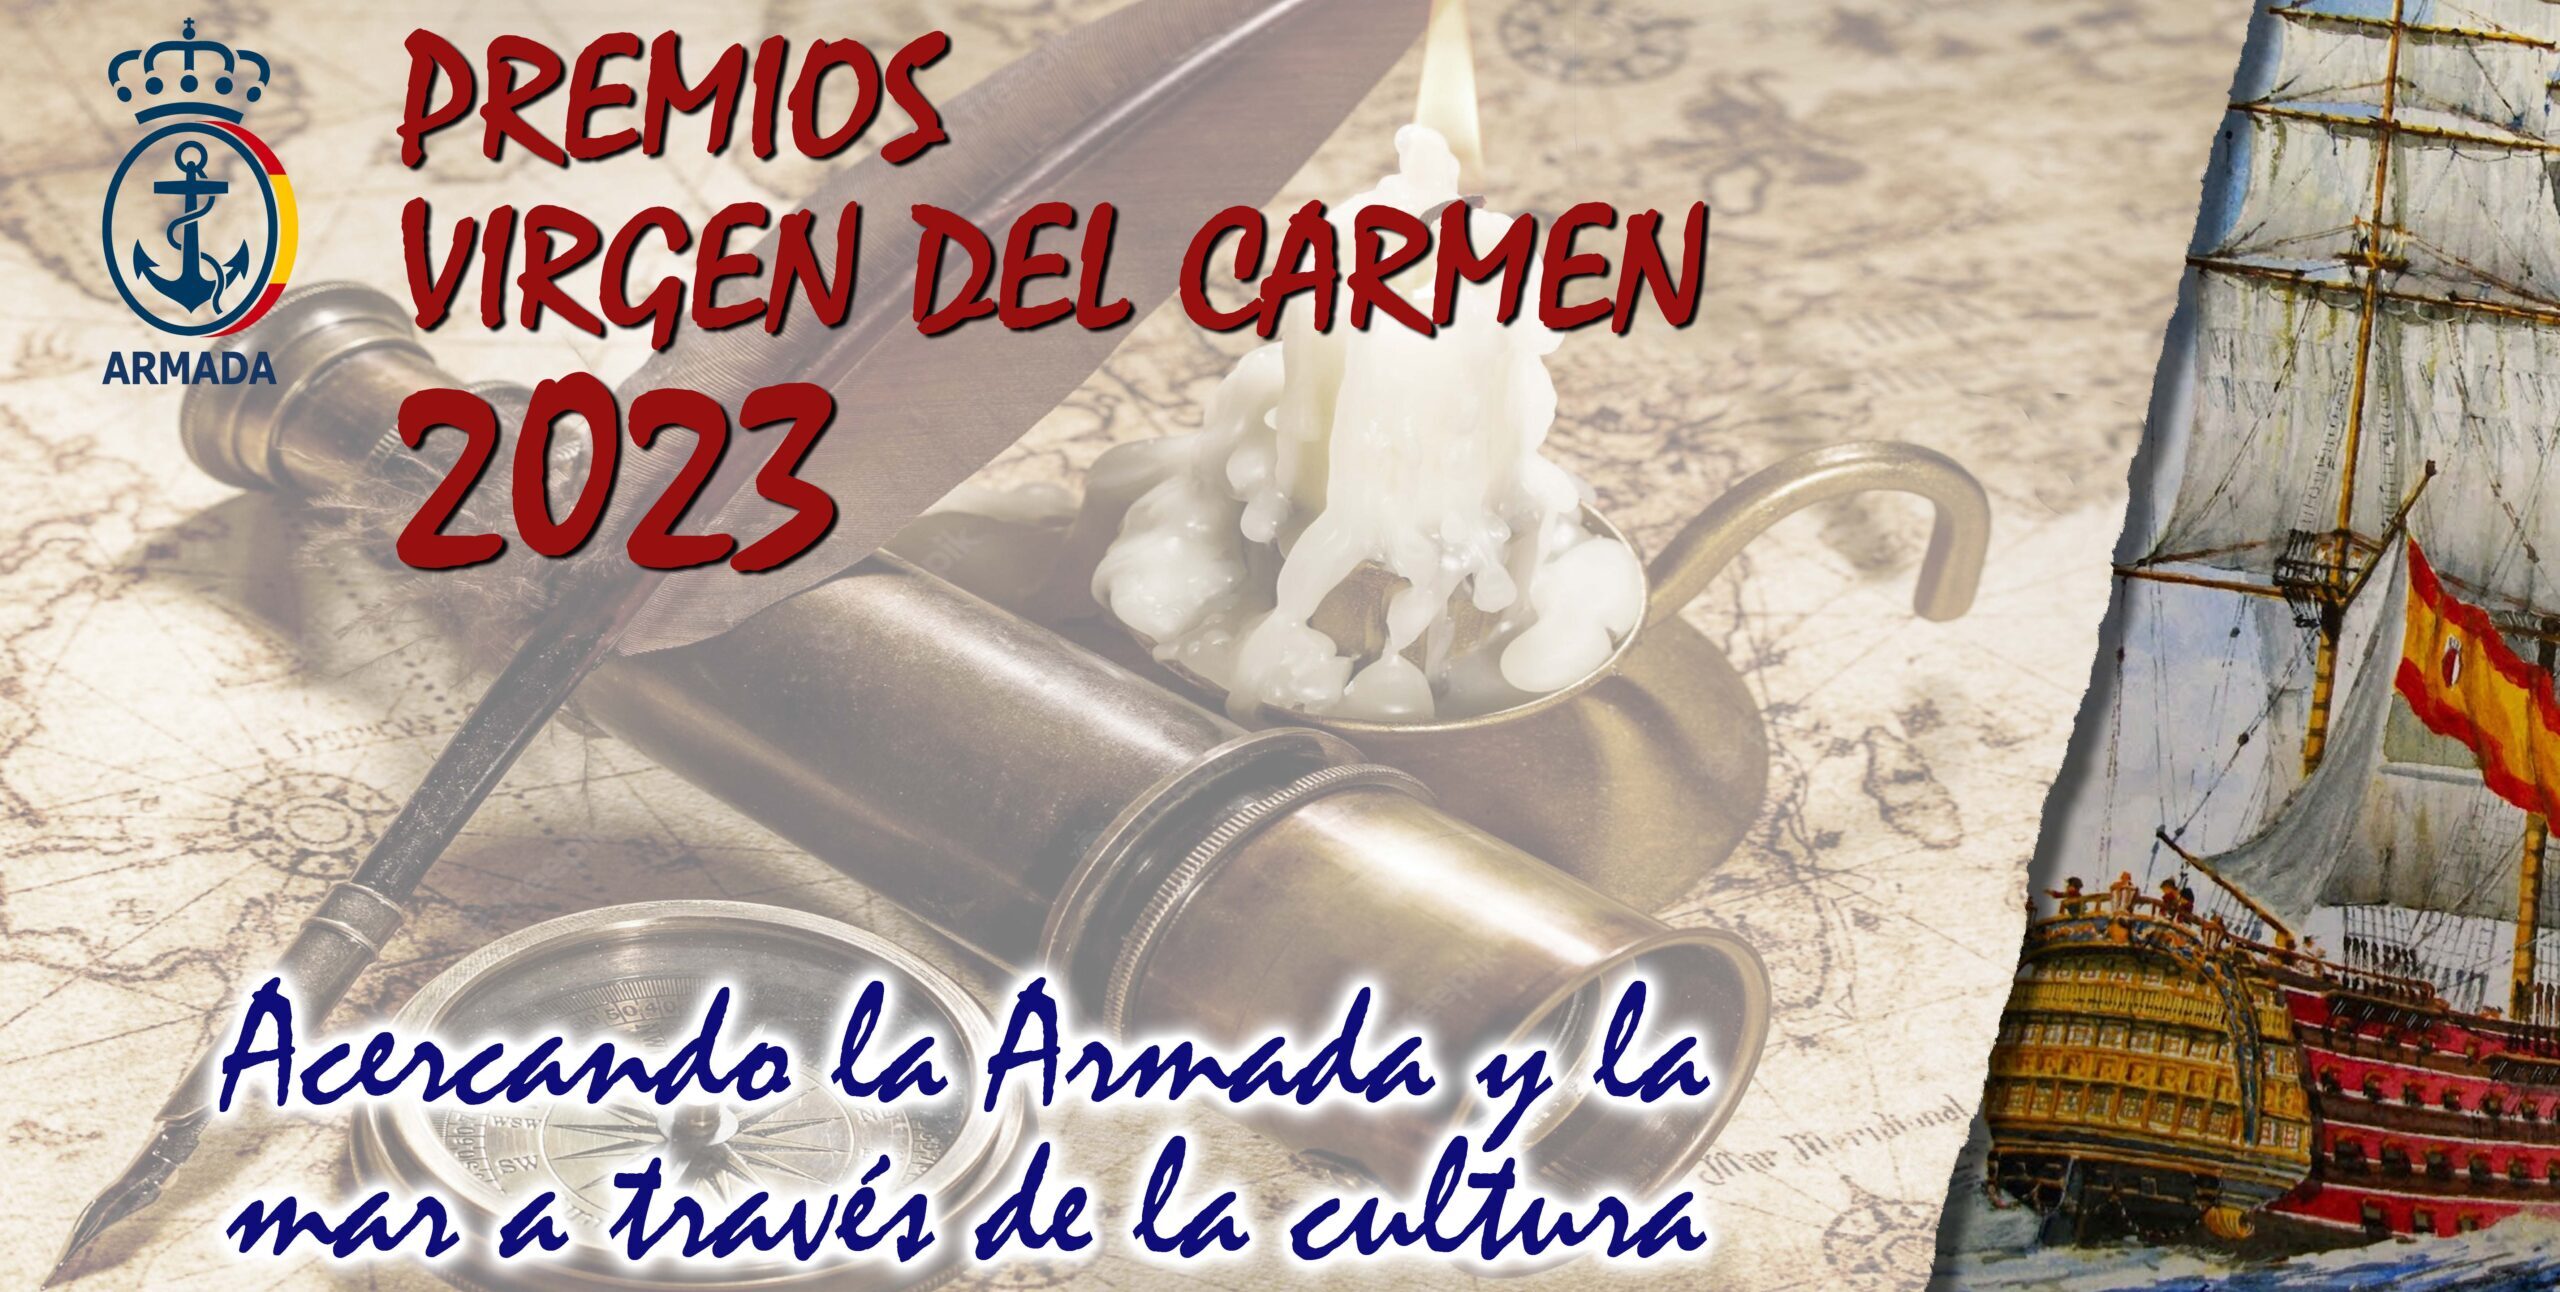 La Armada convoca los Premios Virgen del Carmen 2023